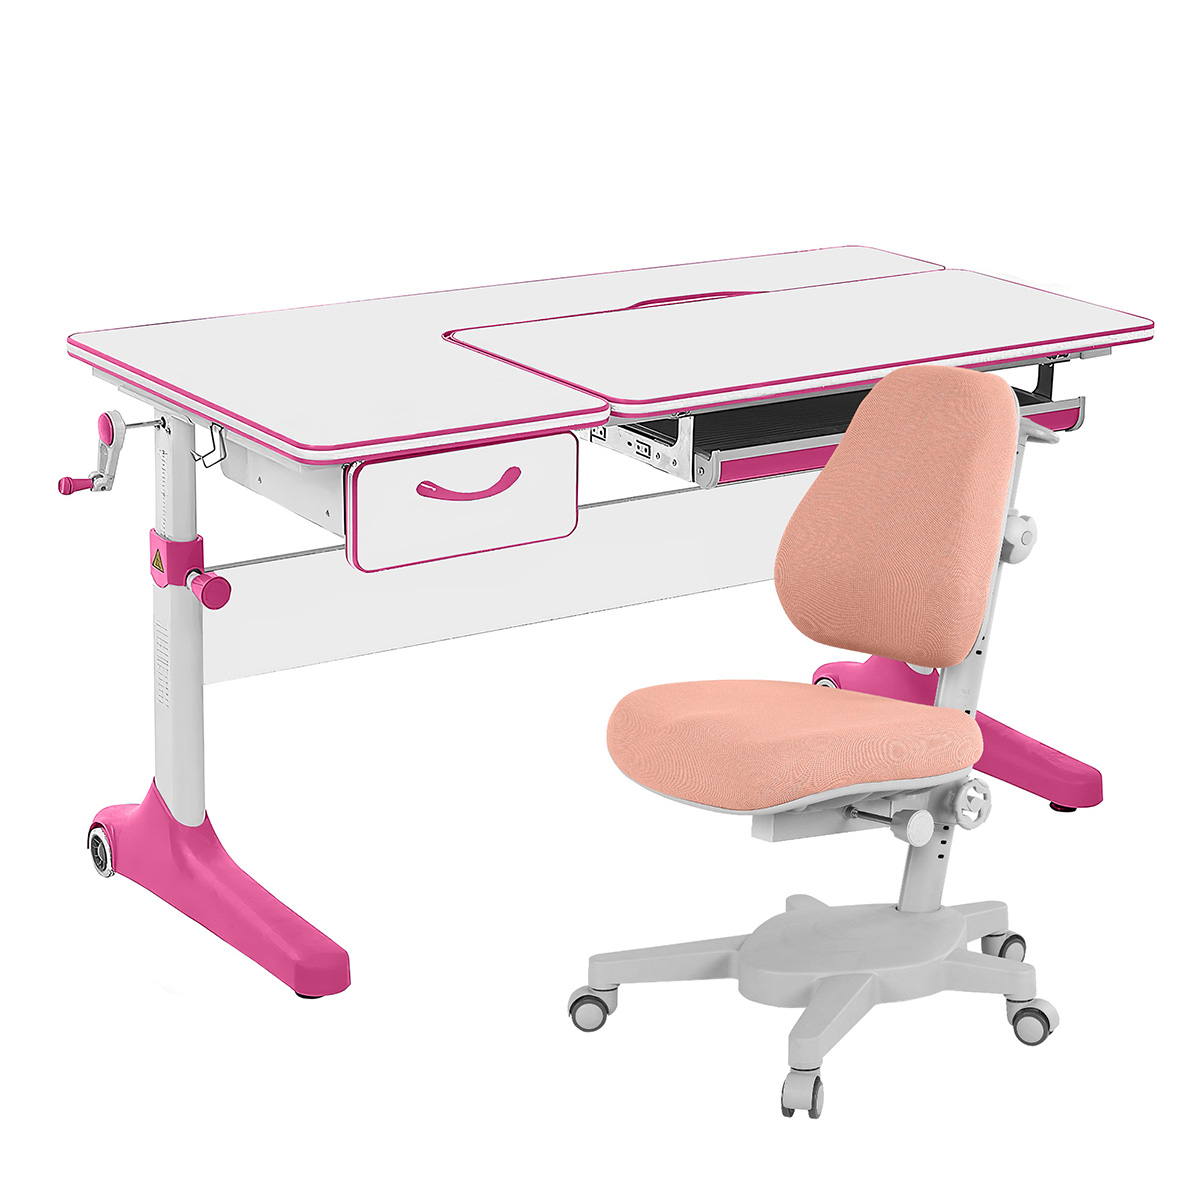 Комплект парта Anatomica Uniqa Lite белый/розовый со светло-розовым креслом Armata комплект парта anatomica study 120 lux белый розовый с розовым креслом armata duos